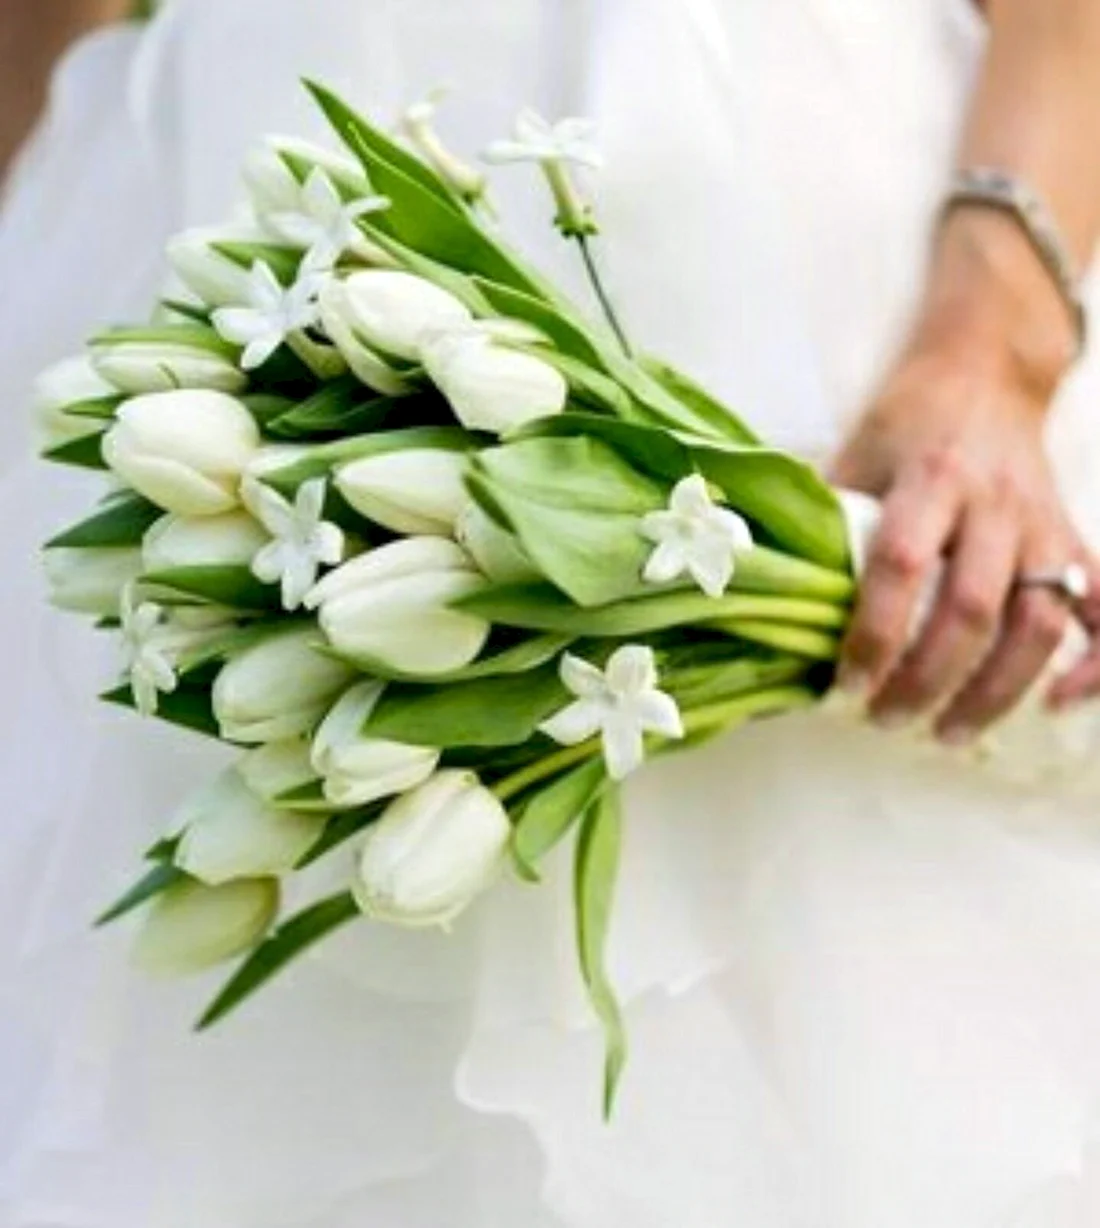 Букет невесты из тюльпанов и фрезий